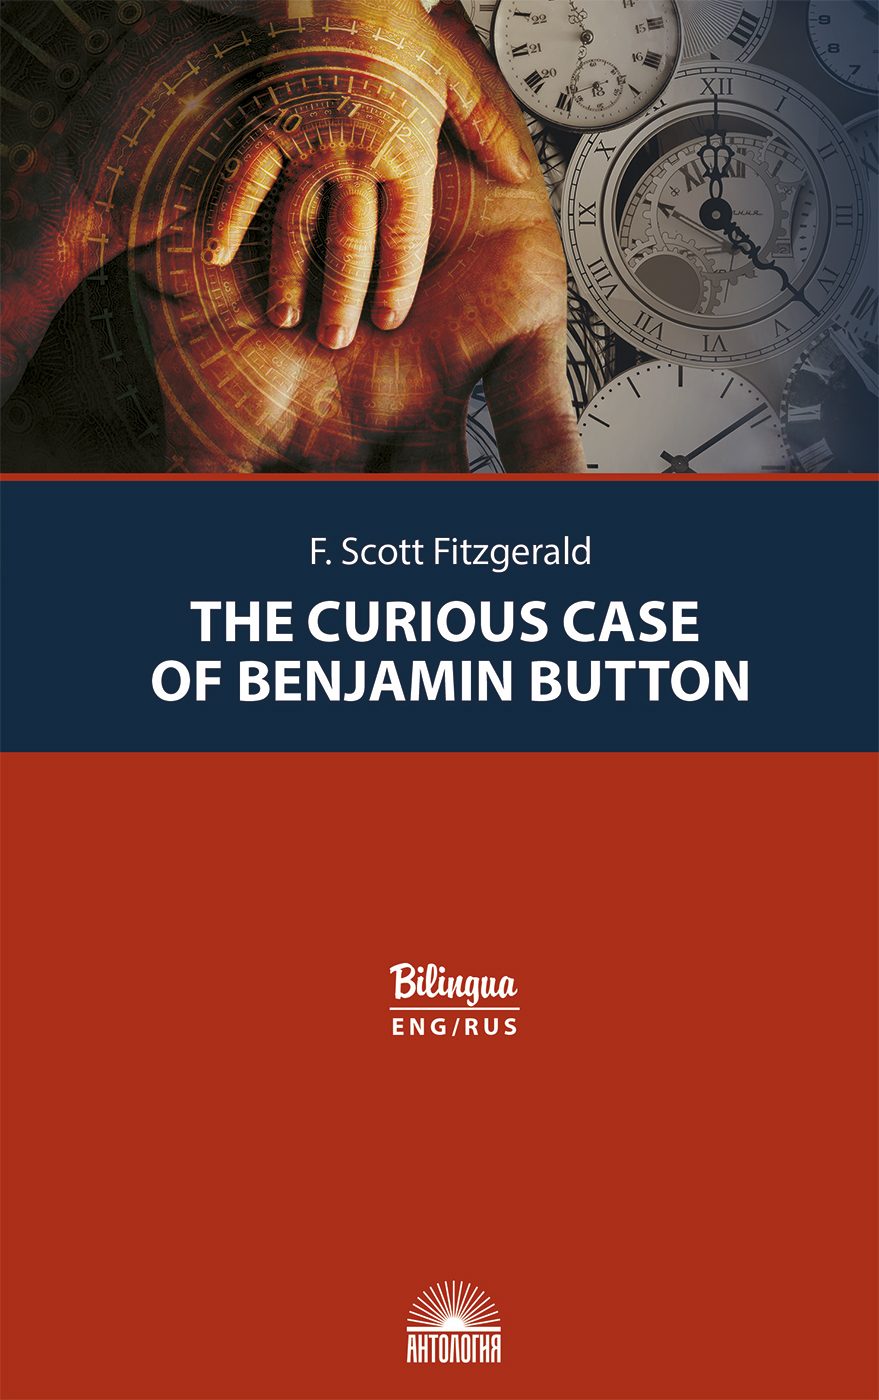 Загадочная история Бенджамина Баттона (The Curious Case of Benjamin Button). Изд. с параллельным текстом: на англ. и рус.  яз.